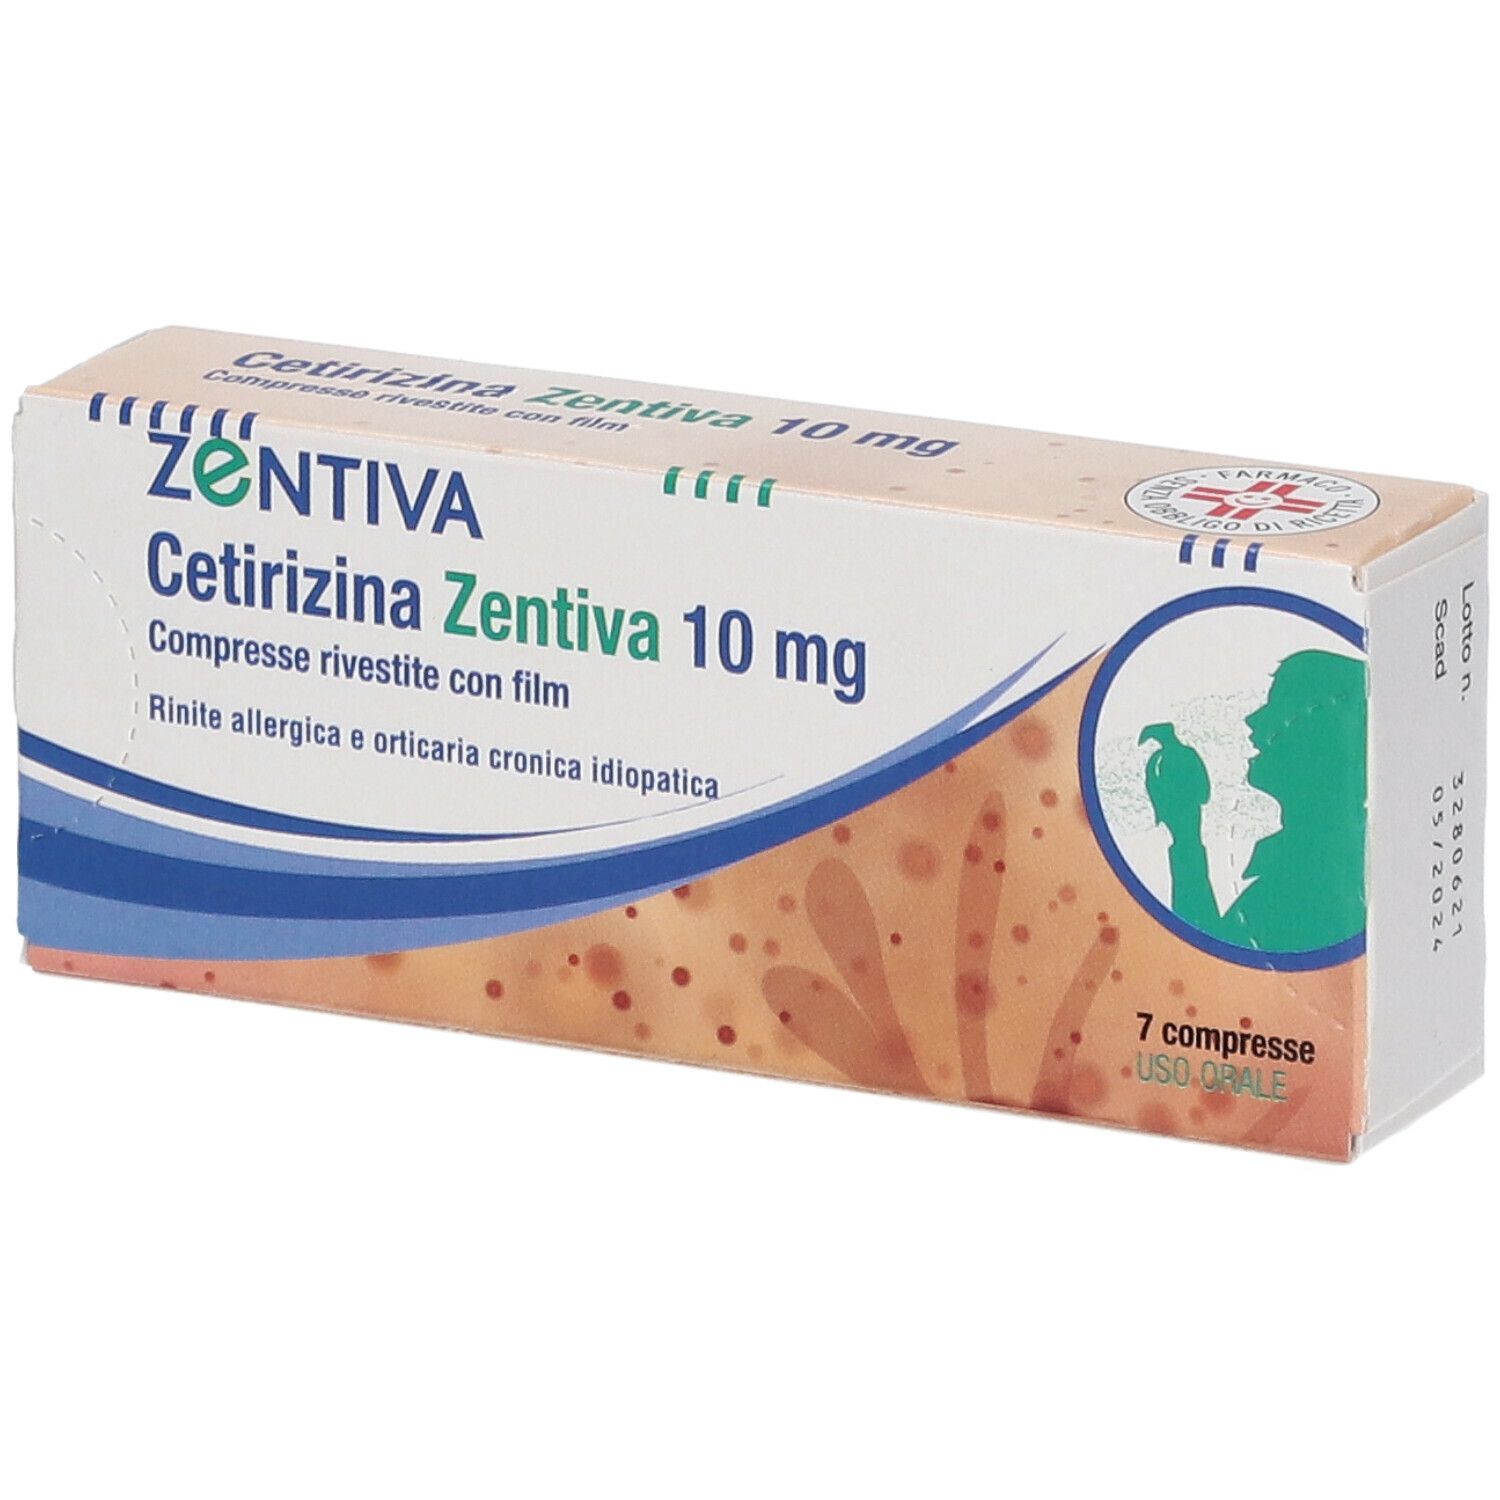 ZENTIVA Cetirizina Zentiva 10 mg